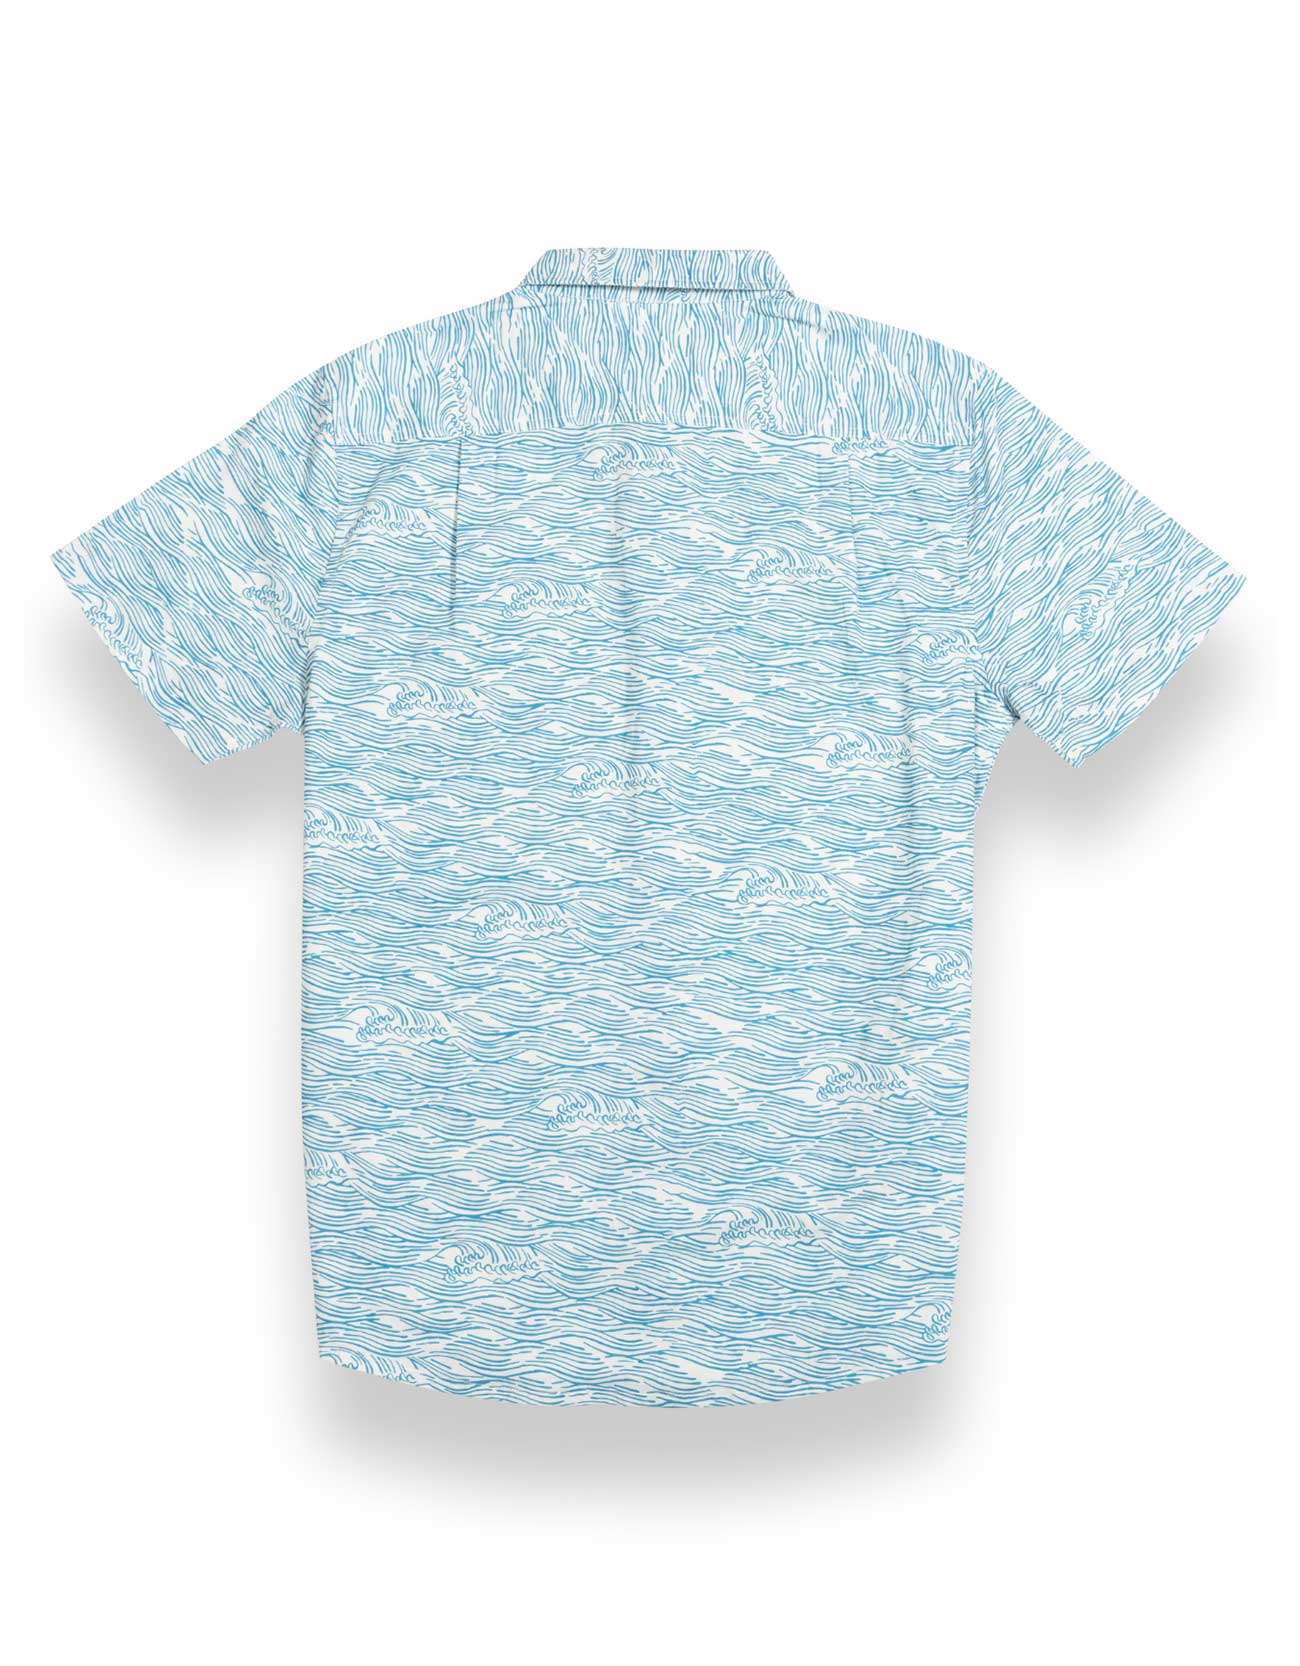 Light blue button up shirt with wave print and hidden side zipper pocket